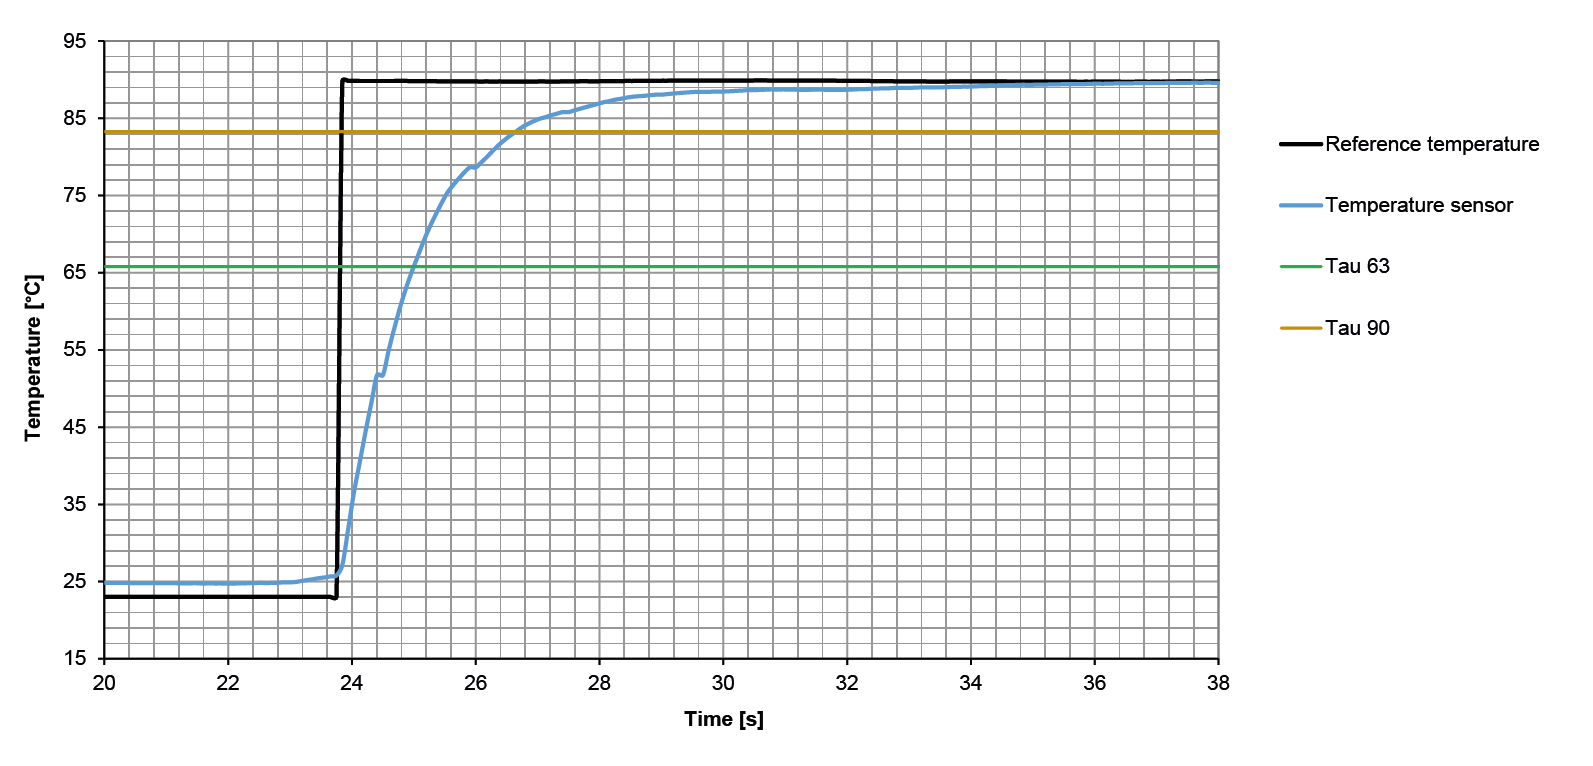 sika temperature sensors response time chart